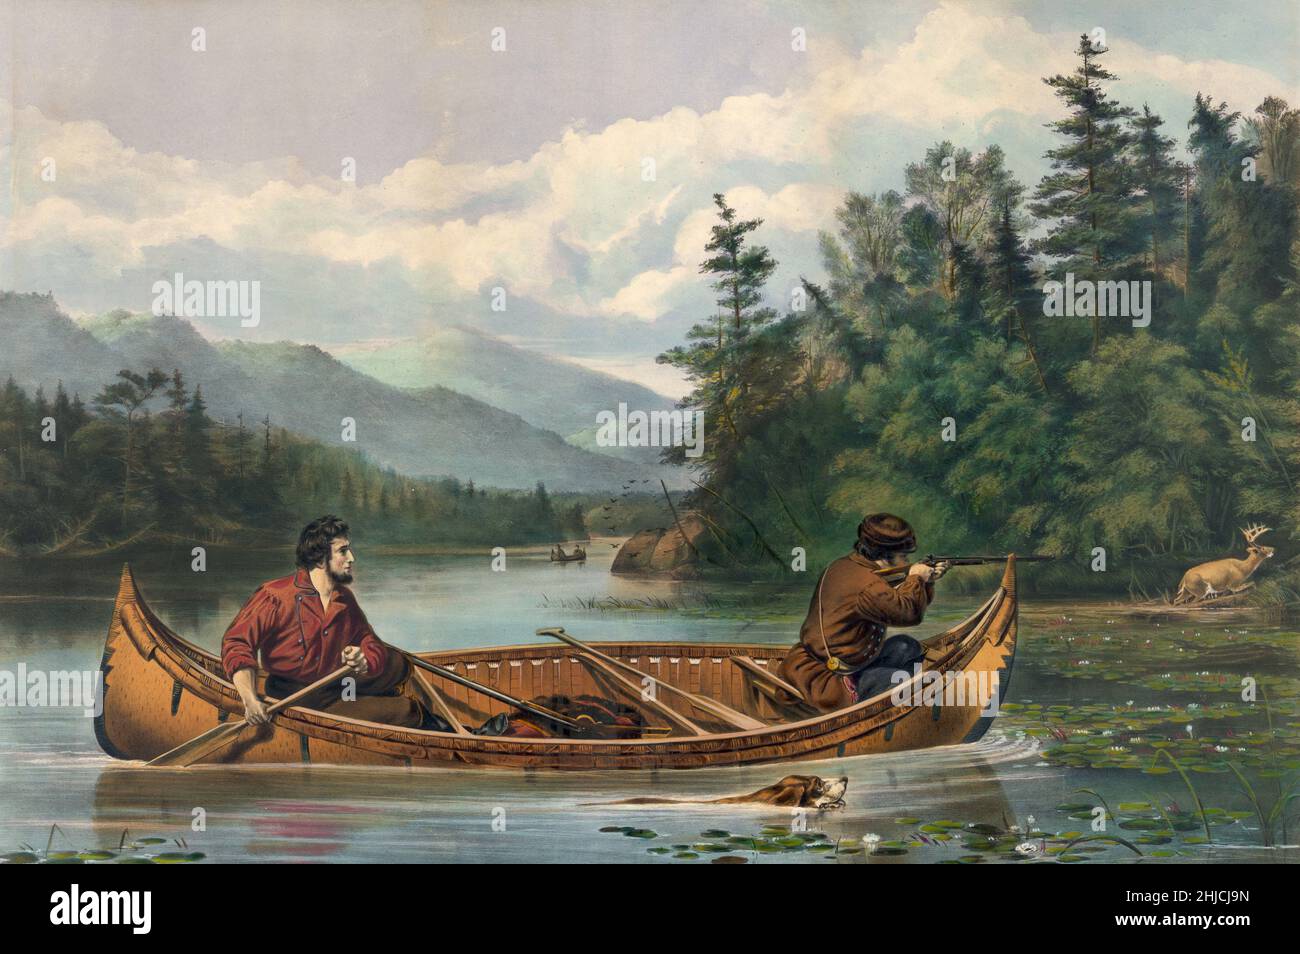 Una scena di cervi americani di frontiera che cacciano da una canoa. 'A Good Chance' dipinto da Arthur Fitzwilliam Tait; litografia di Currier & Ives, 1863. Foto Stock